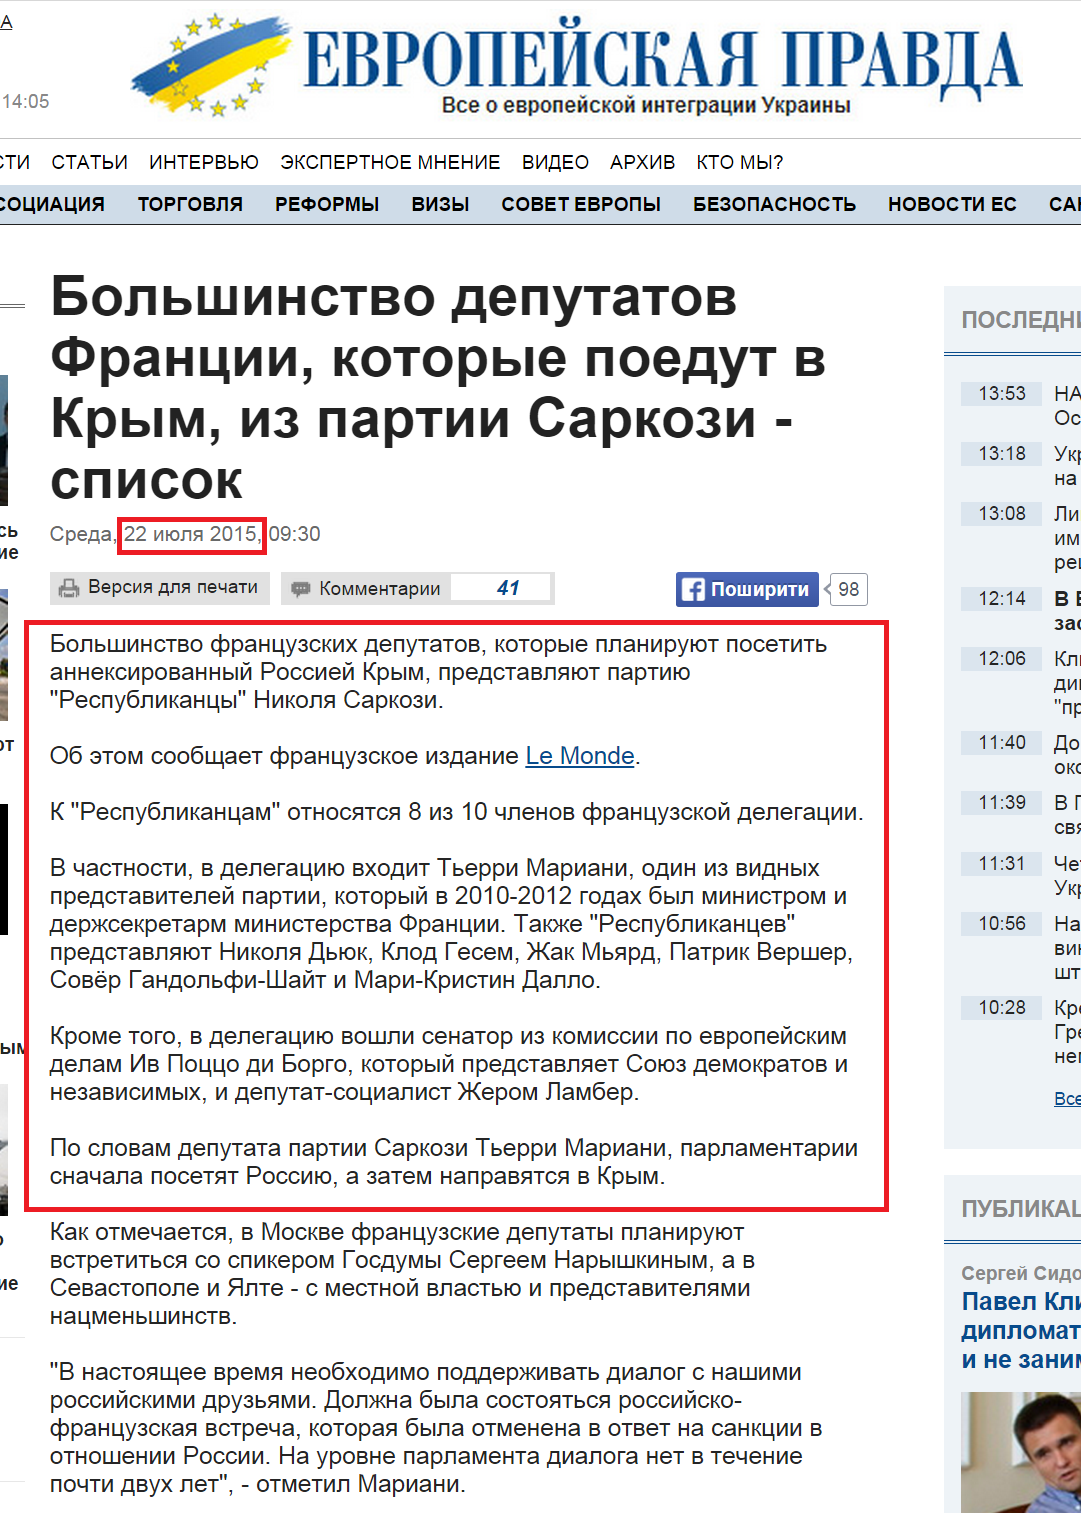 http://www.eurointegration.com.ua/rus/news/2015/07/22/7036149/